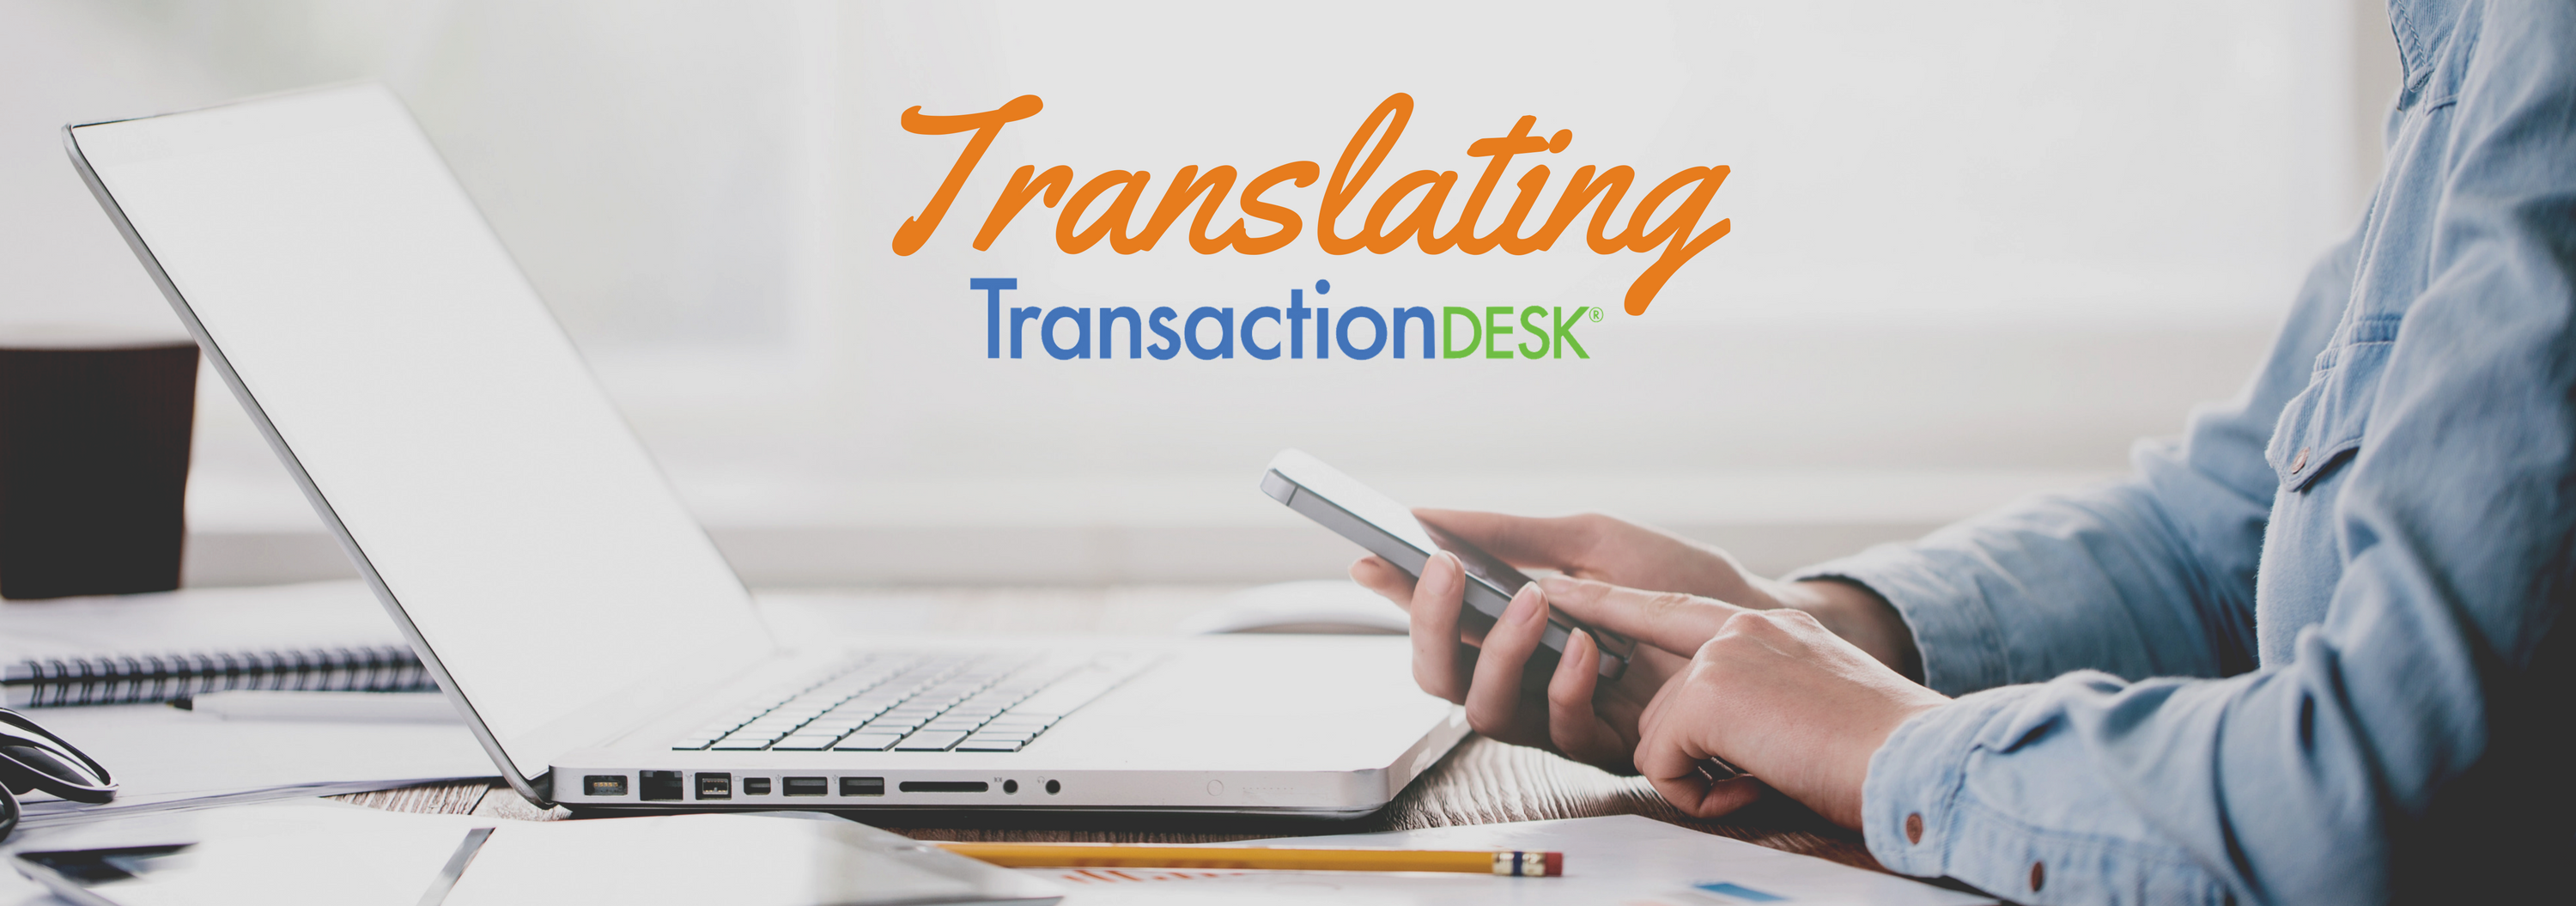 transaction desk